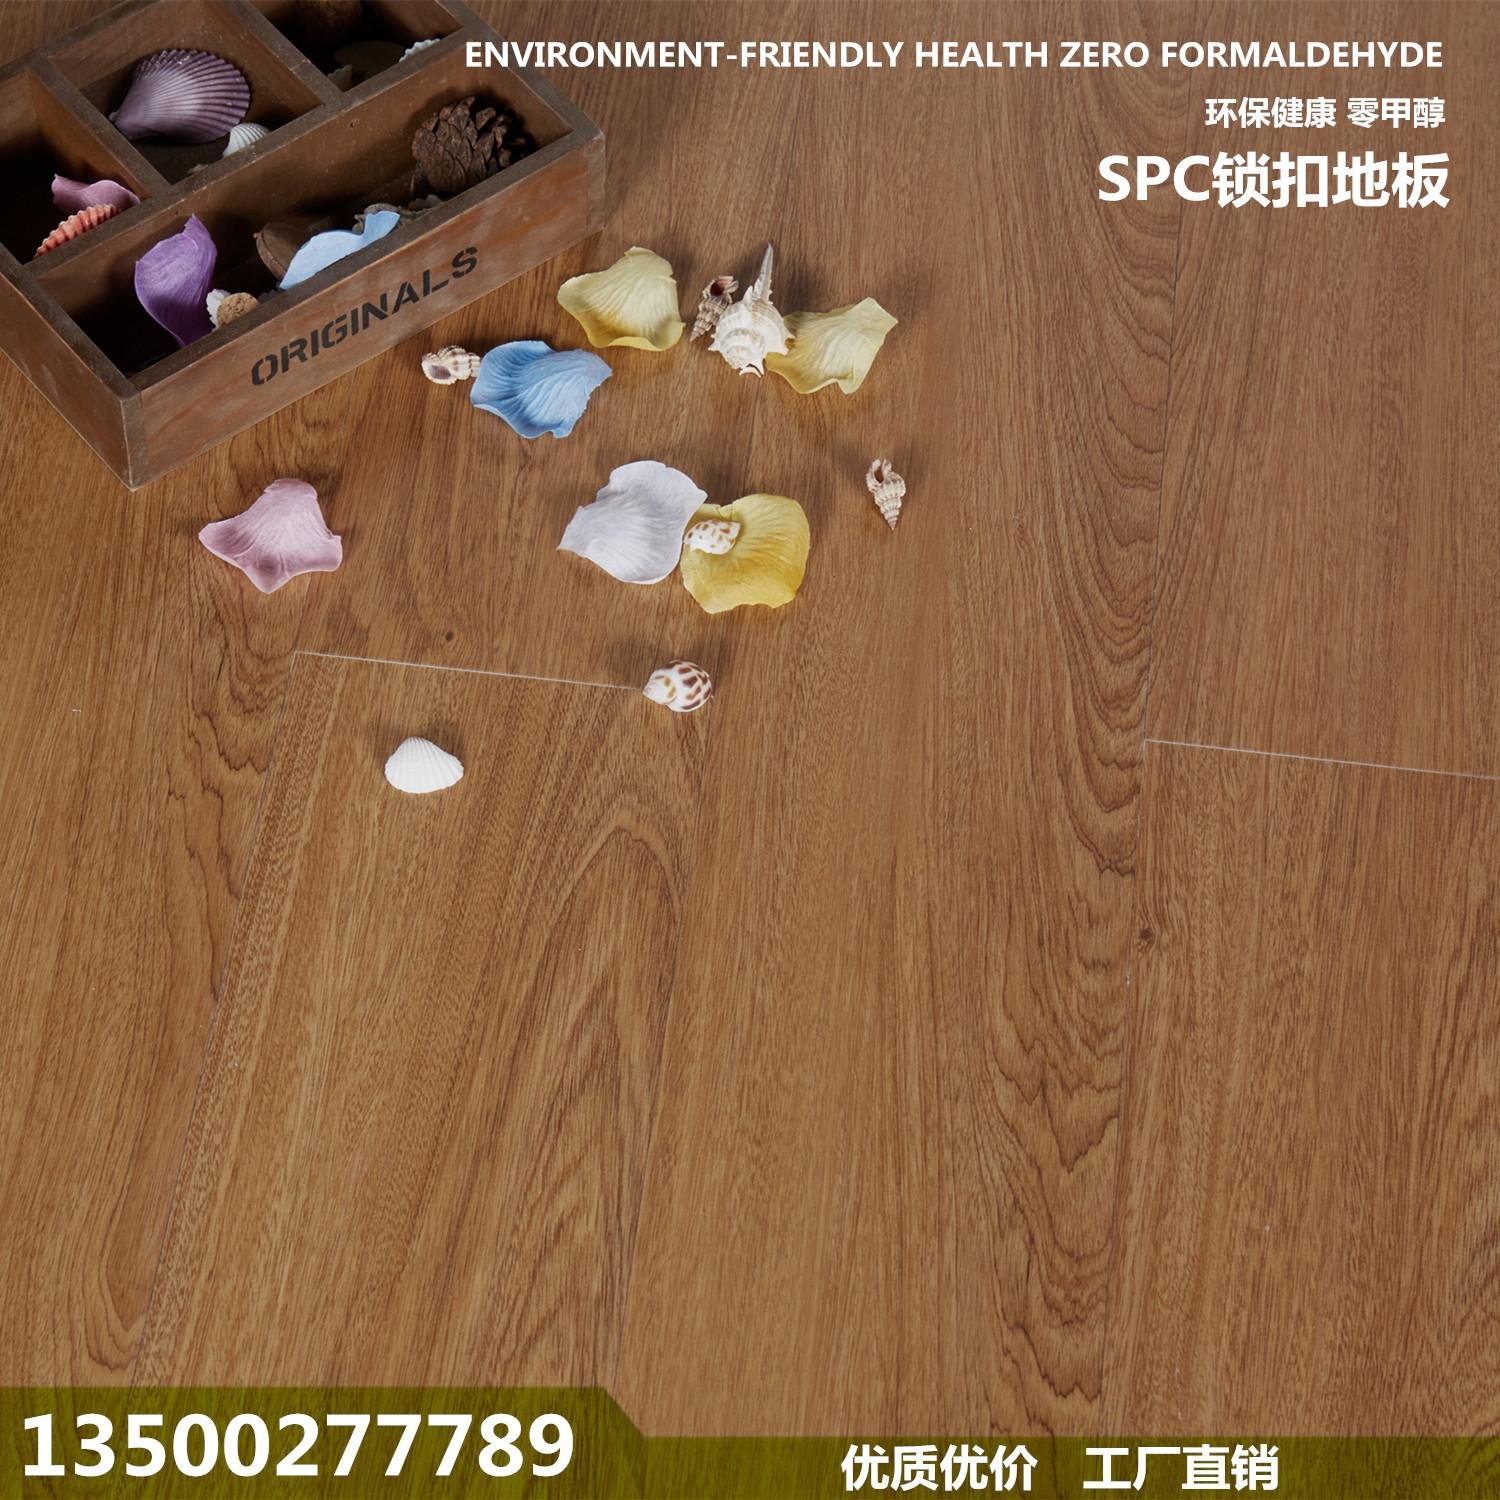 廠家直銷SPC石塑鎖扣地板PVC地板廣東粵多 5